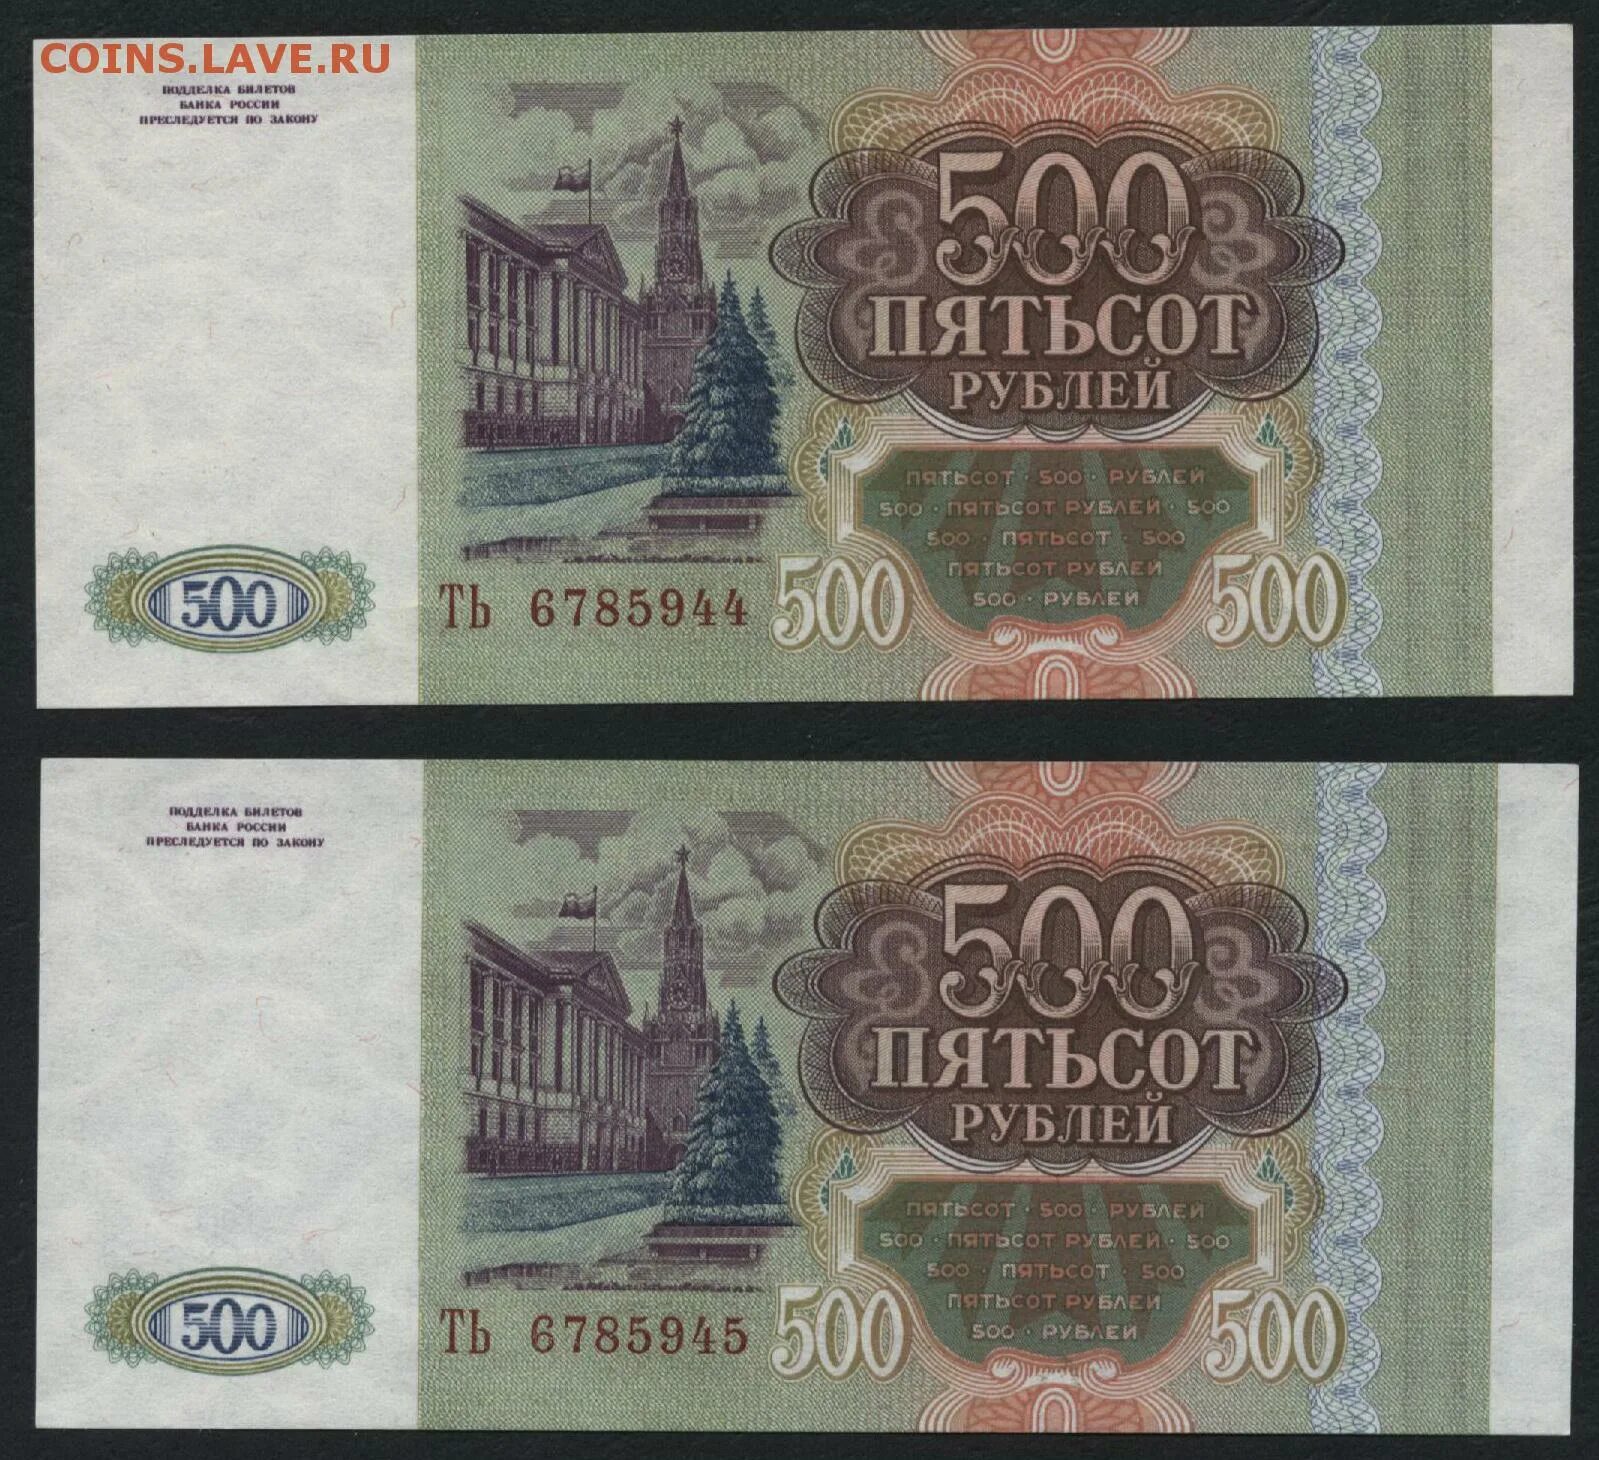 31 500 в рублях. 500 Рублей. 500 Рублей 1993. Пятьсот рублей 1993. 500 Рублей 1993 года.